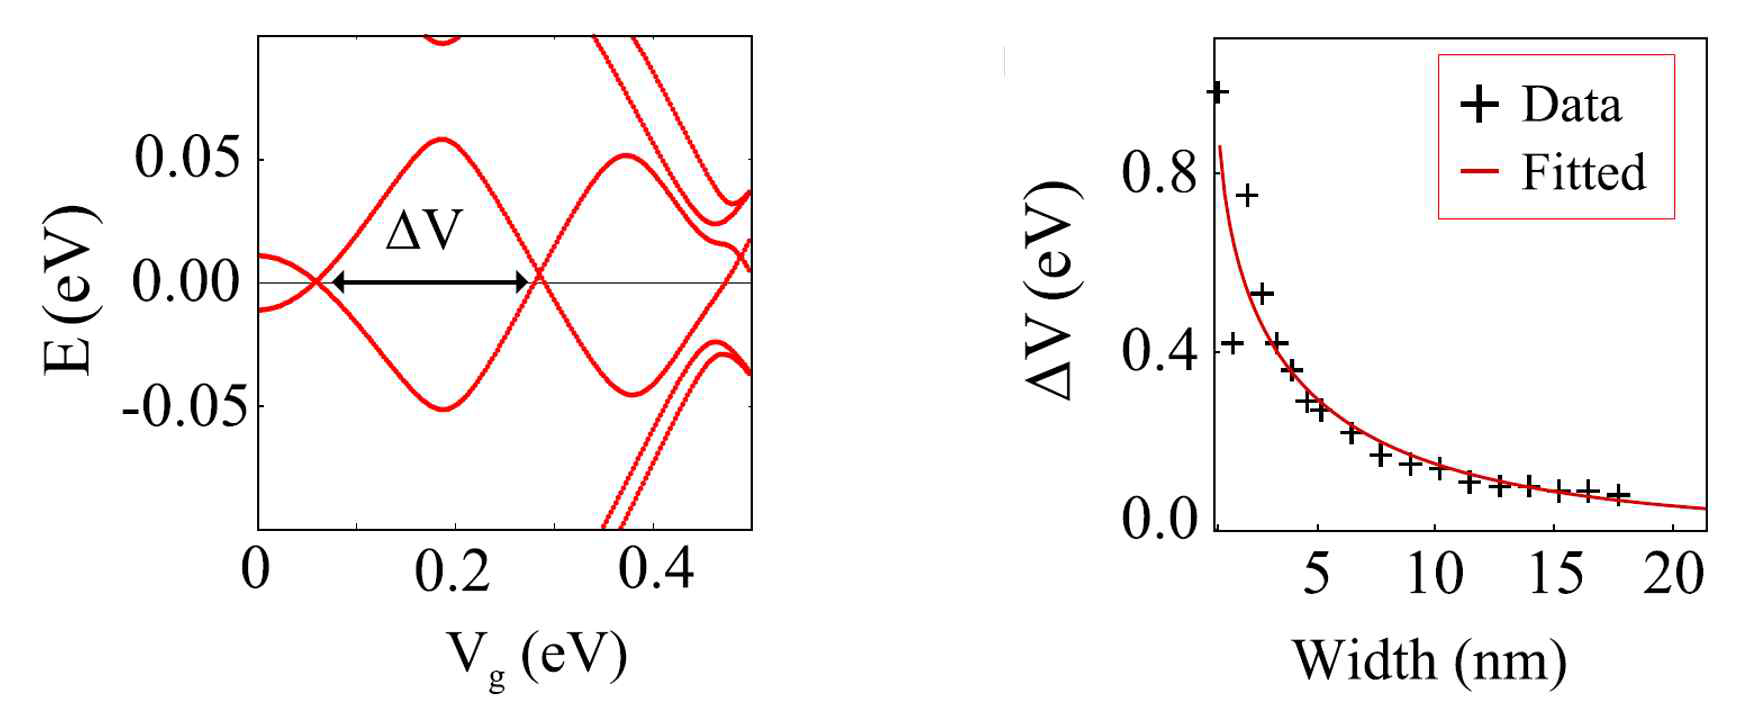 뒤틀린 이중층 그래핀 구조에서 발현하는 위상학적 instanton 진동 현상의 검증. (왼쪽)tight-binding 모델을 활용하여 우상학적 모서리 상태의 에너지 분극이 수직으로 걸린 gate 포텐셜 Vg 의 강도에 따라 진동하는 것을 수치적으로 계산함. (오른쪽) 에너지 진동 주기 (△E, 왼쪽 그림 참조)가 그래핀 조각의 크기에 따라 감소함. semi-classical 접근법을 통해 예측한 값 (fitted, red line)과 tight-binding을 통해 수치적으로 계산한 값 (+ Data)과 일치함을 확인할 수 있음